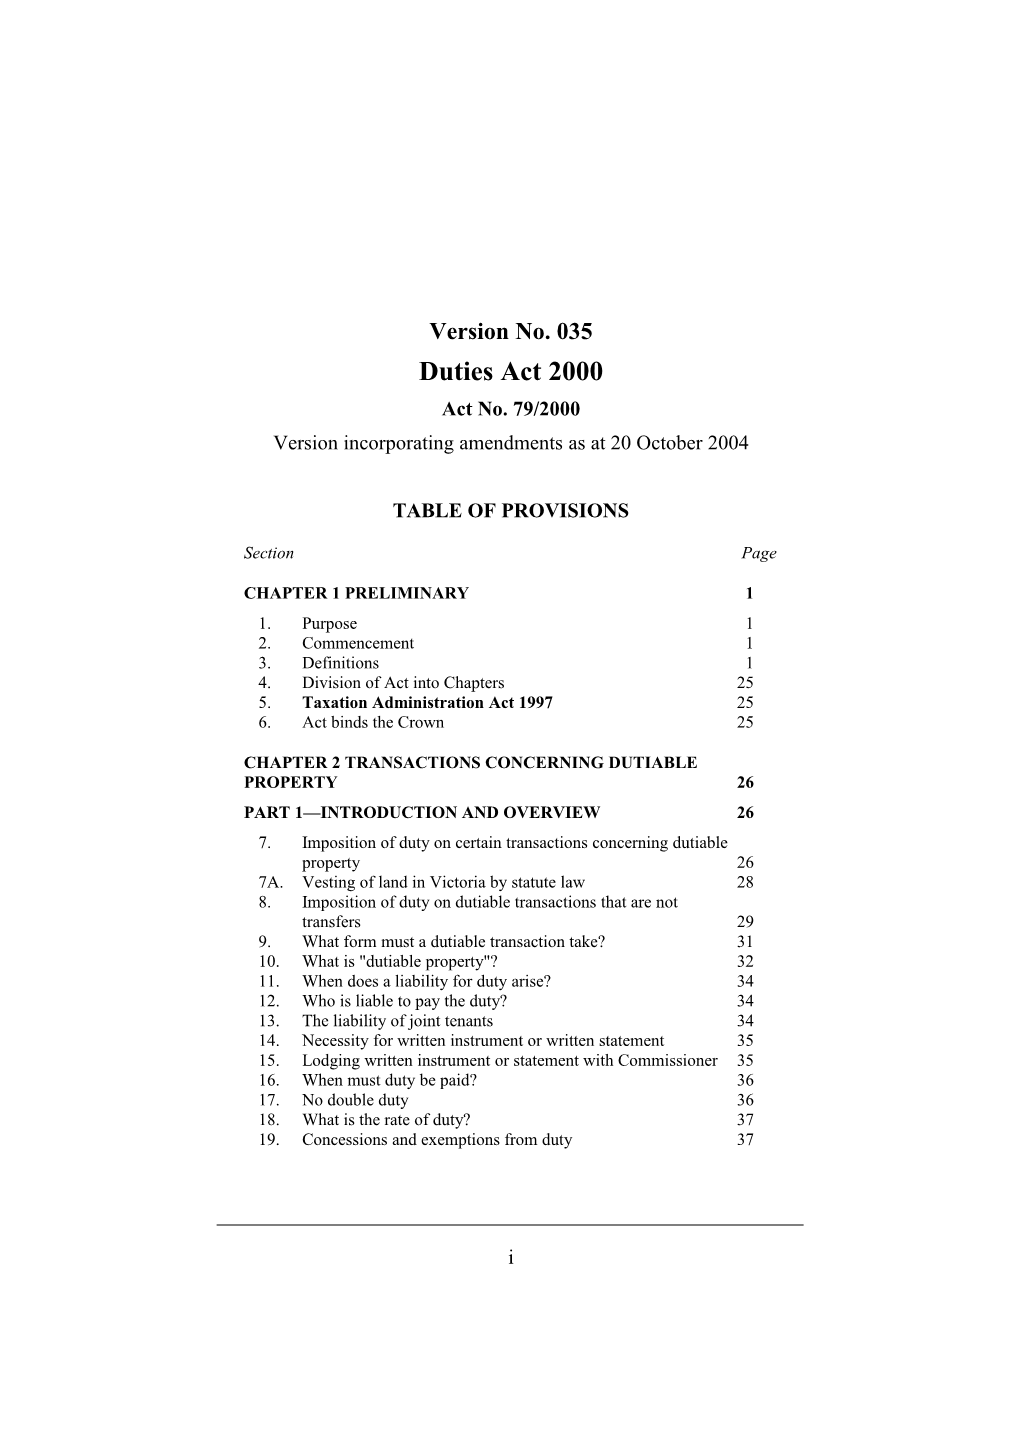 Version Incorporating Amendments As at 20 October 2004